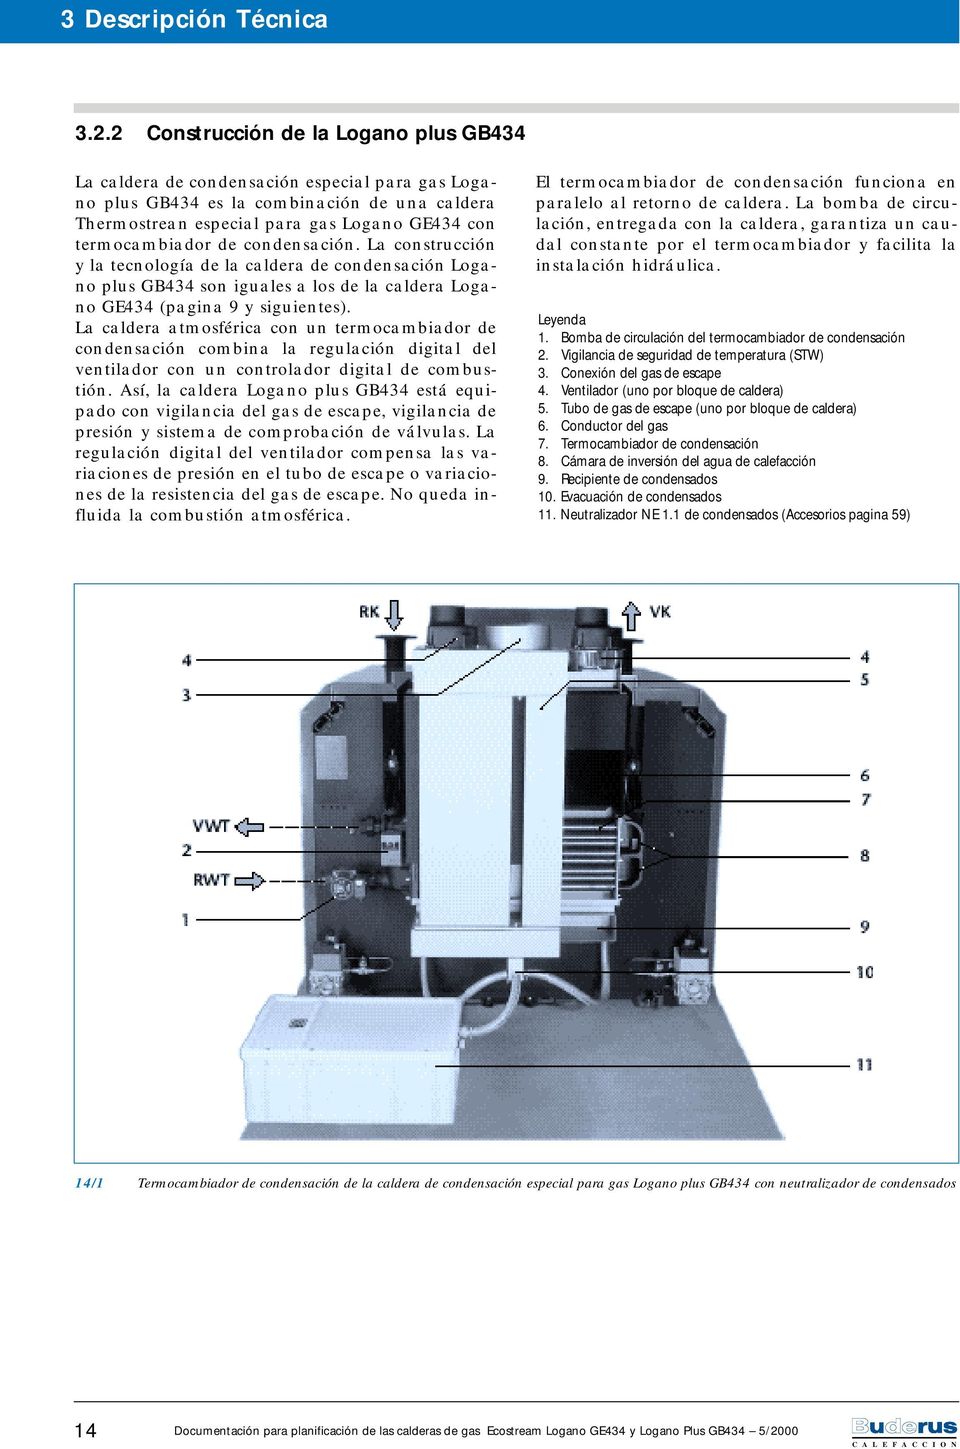 de condensación. La construcción y la tecnología de la caldera de condensación Logano plus GB434 son iguales a los de la caldera Logano GE434 (pagina 9 y siguientes).